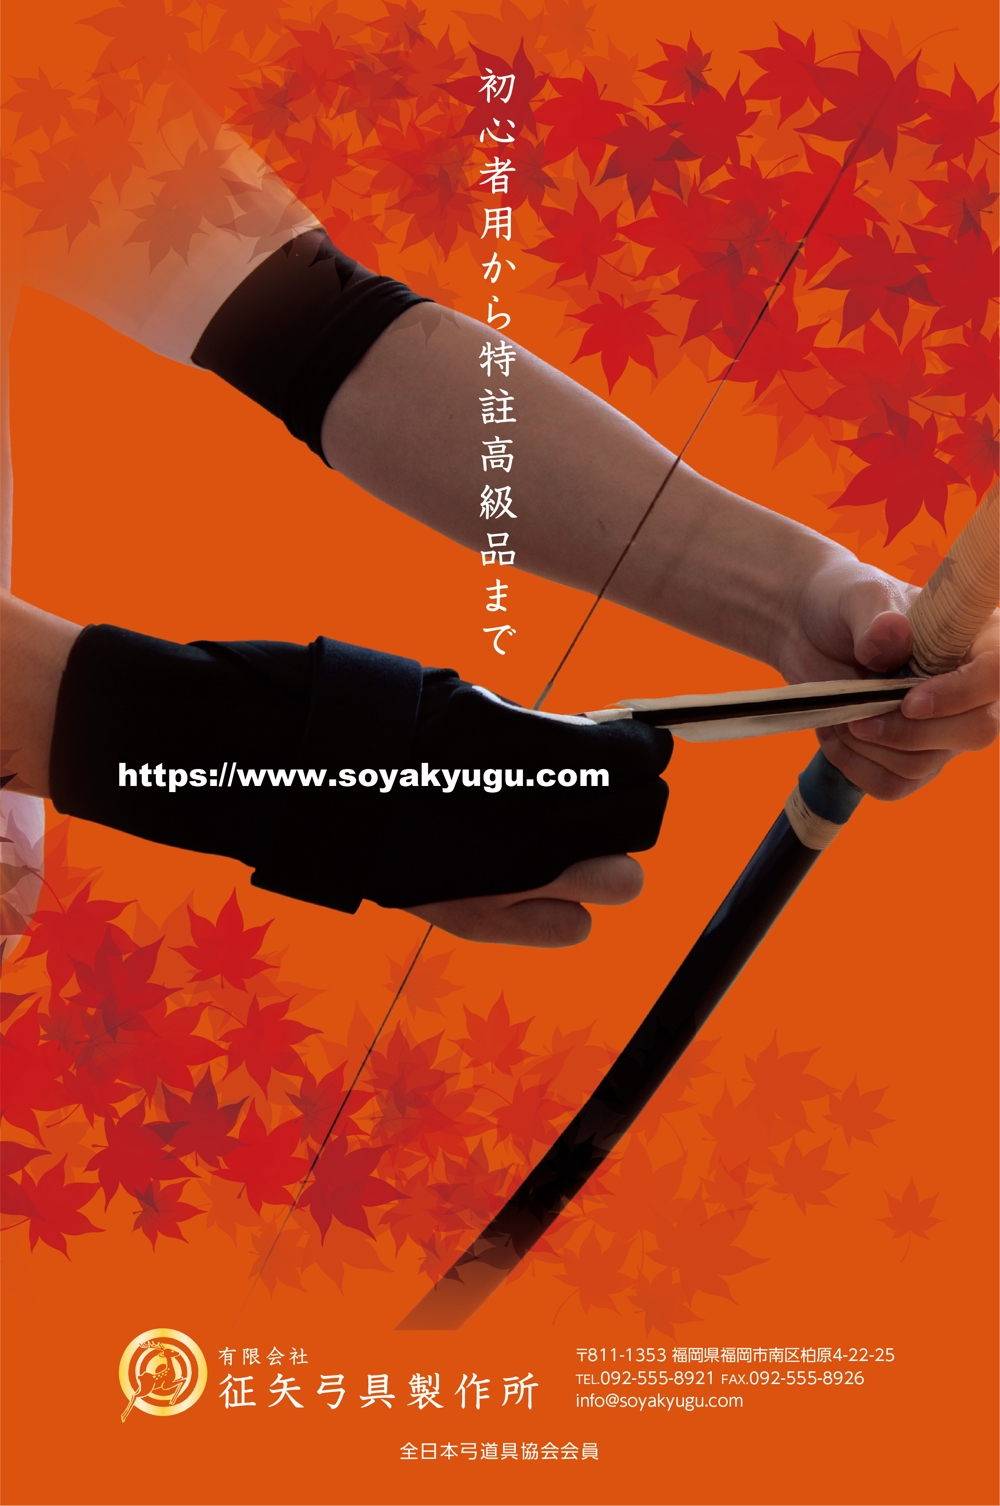 弓道をする方なら誰でも知っている月刊「弓道」の裏表紙の会社広告デザイン